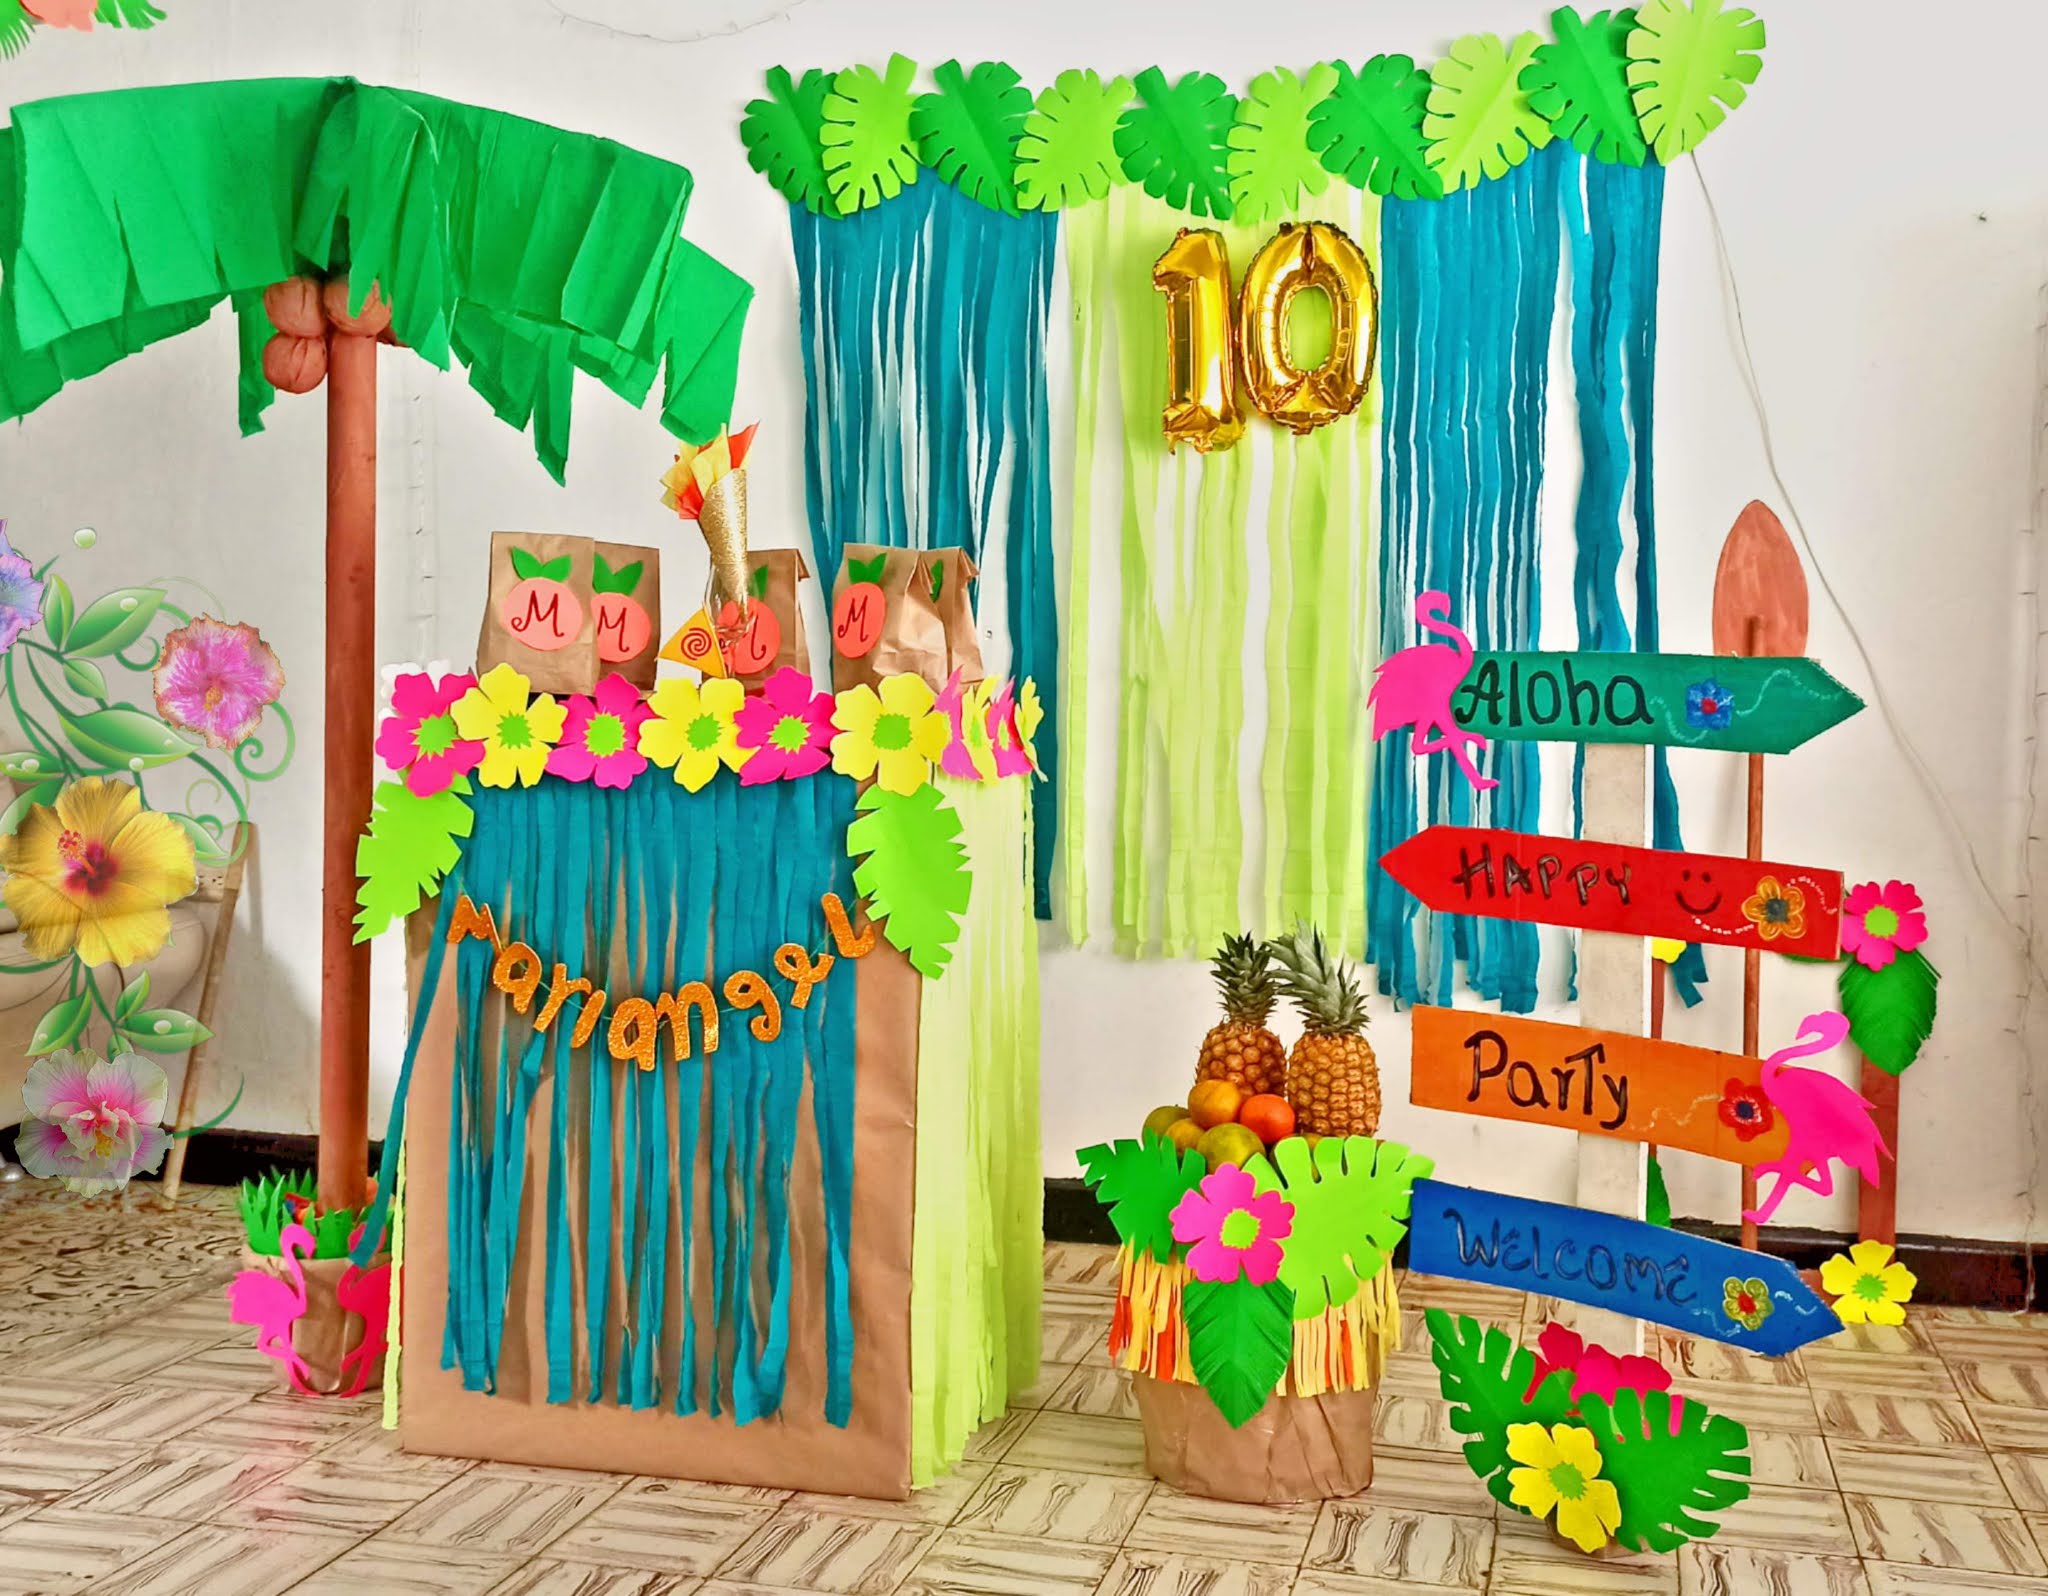 16 ideas de Fiesta temática Lilo y stich  decoracion fiesta cumpleaños,  fiestas de cumpleaños hawaianas, fiestas temáticas